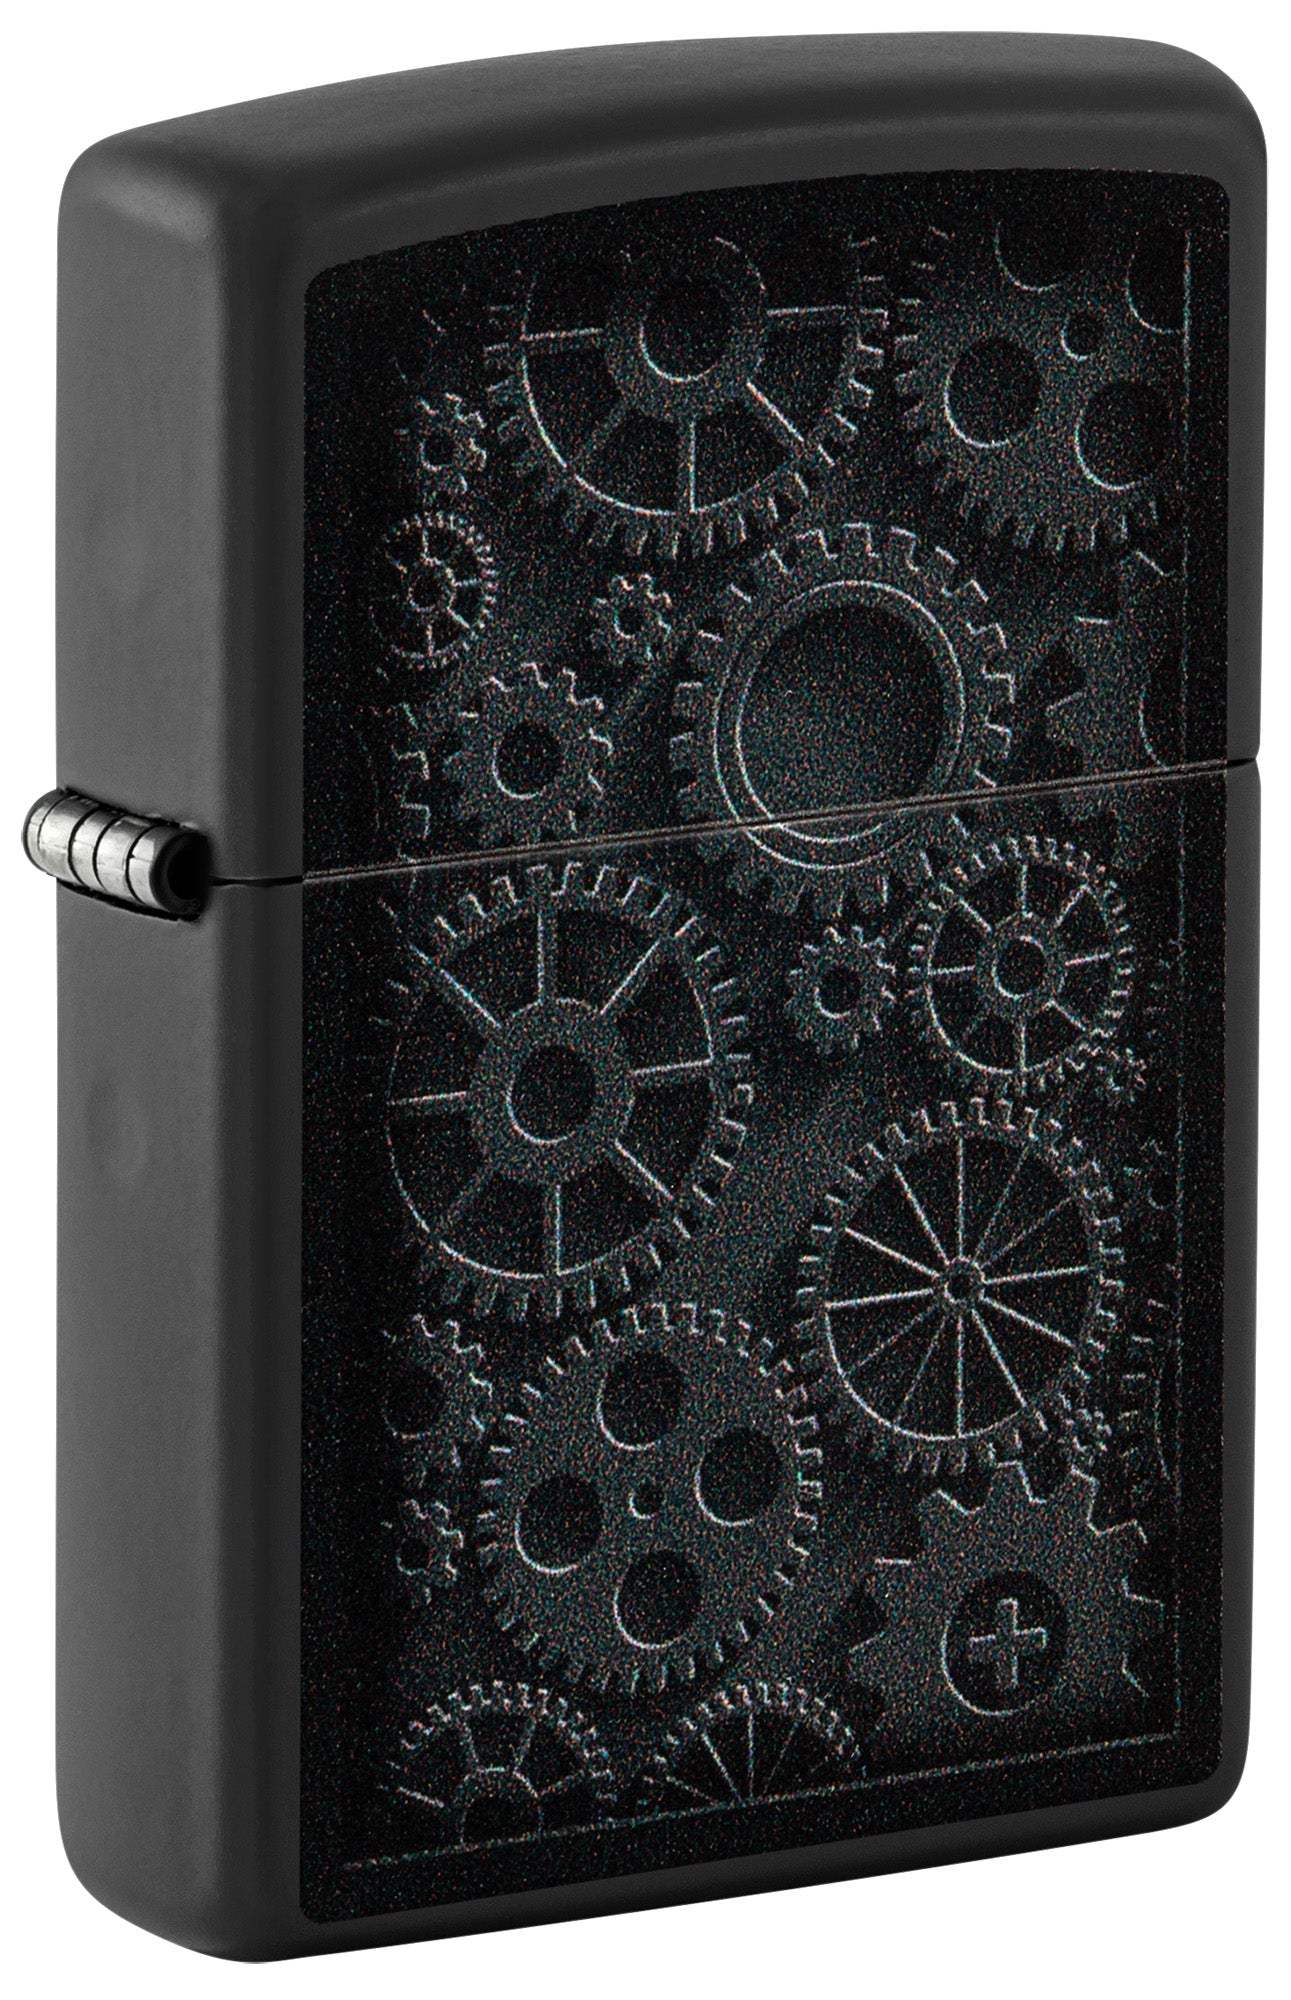 Zippo Lighter: Steampunk Gears - Black Matte 48999